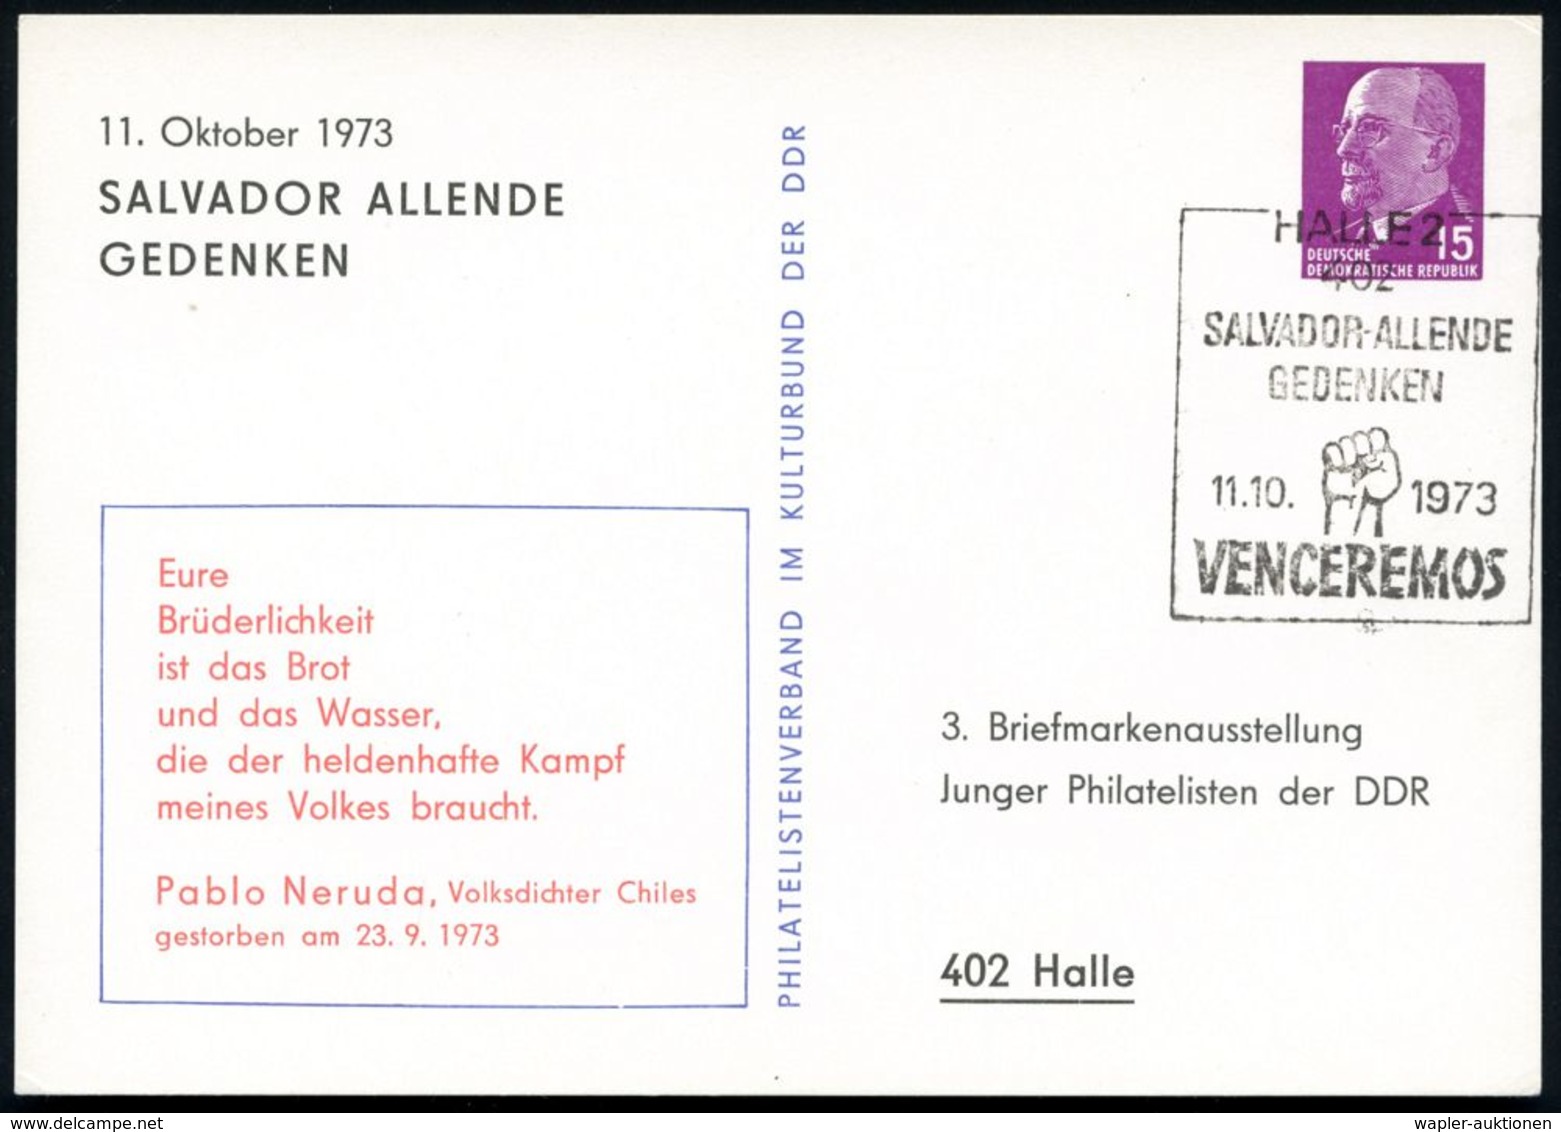 402 HALLE 2/ SALVADOR ALLENDE/ GEDENKEN.. 1973 (11.10.) SSt (Faust) Auf Passender PP 15 Pf. Ulbricht: Eure Brüderlichkei - Schriftsteller